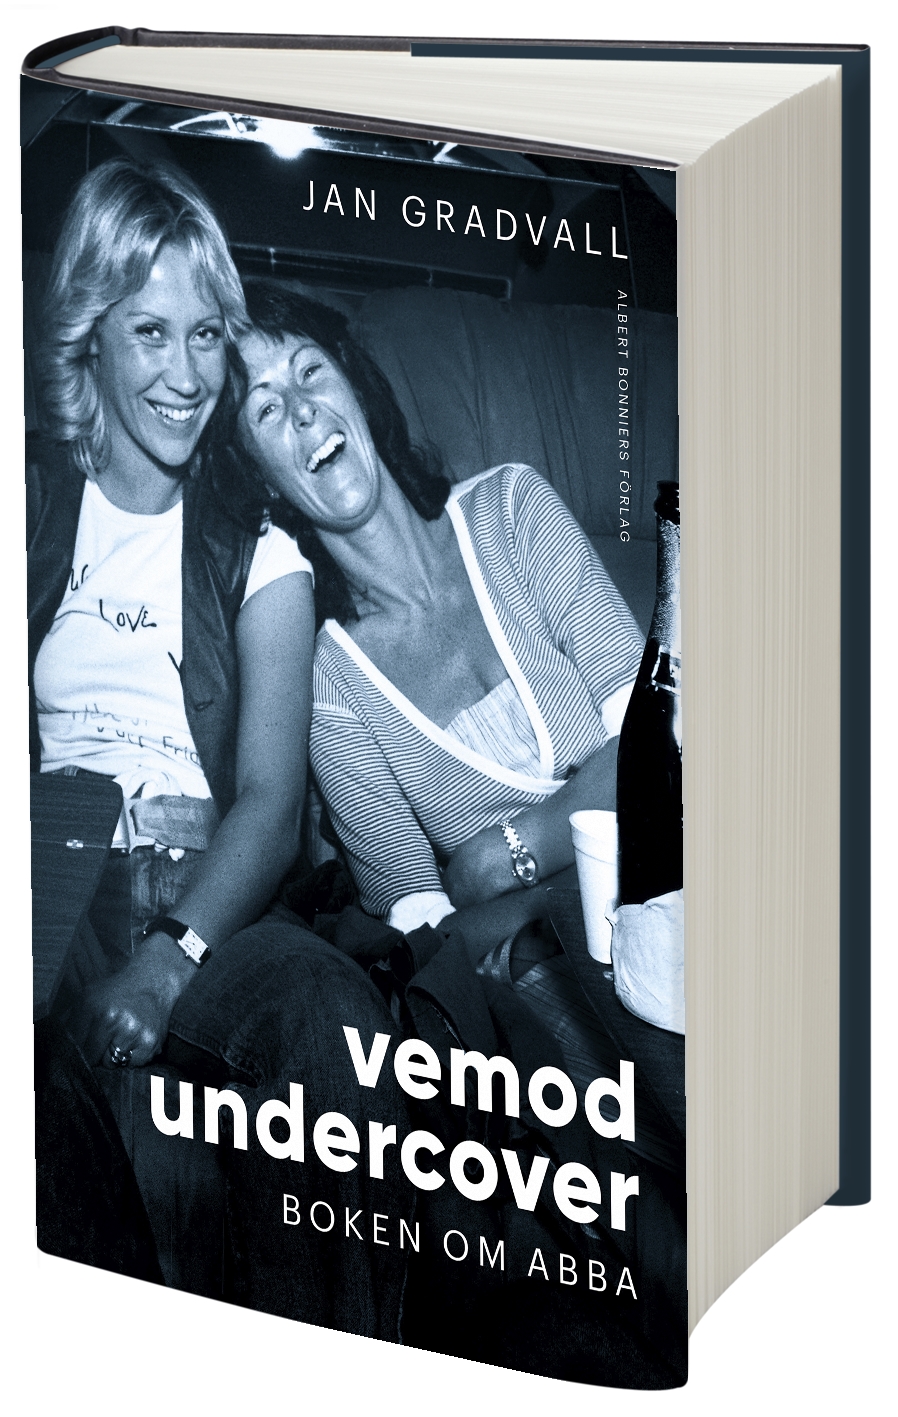 Ein neues Buch über ABBA "Vemod undercover"